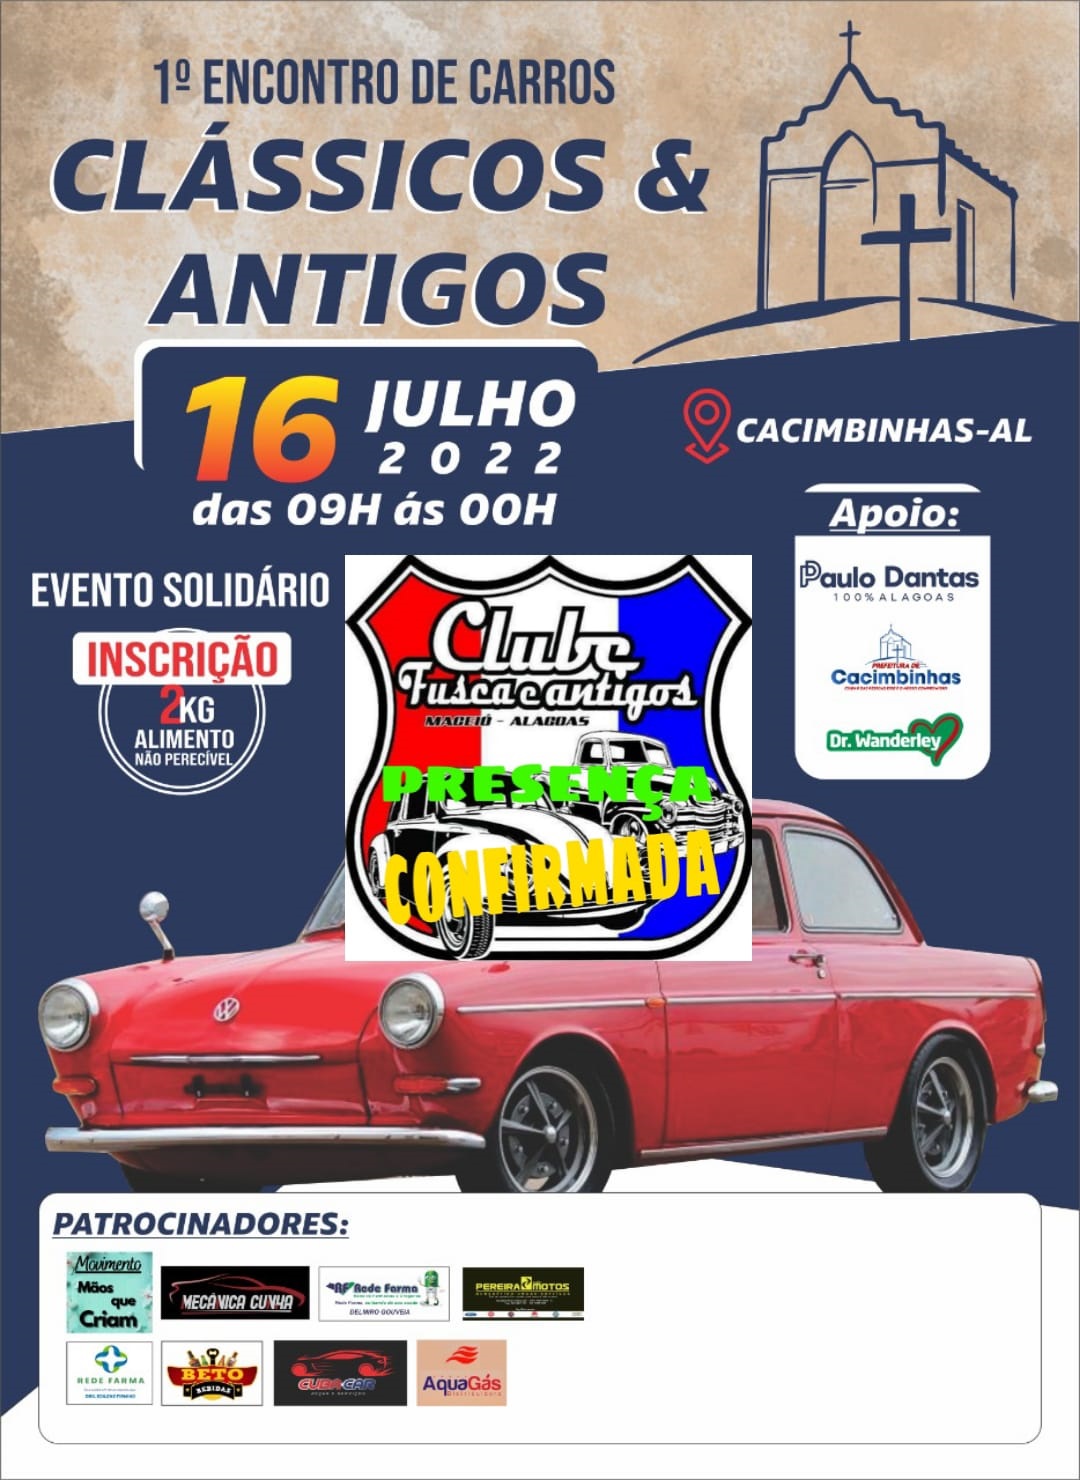 1º encontro de carros clássicos e antigos acontece hoje em Cacimbinhas